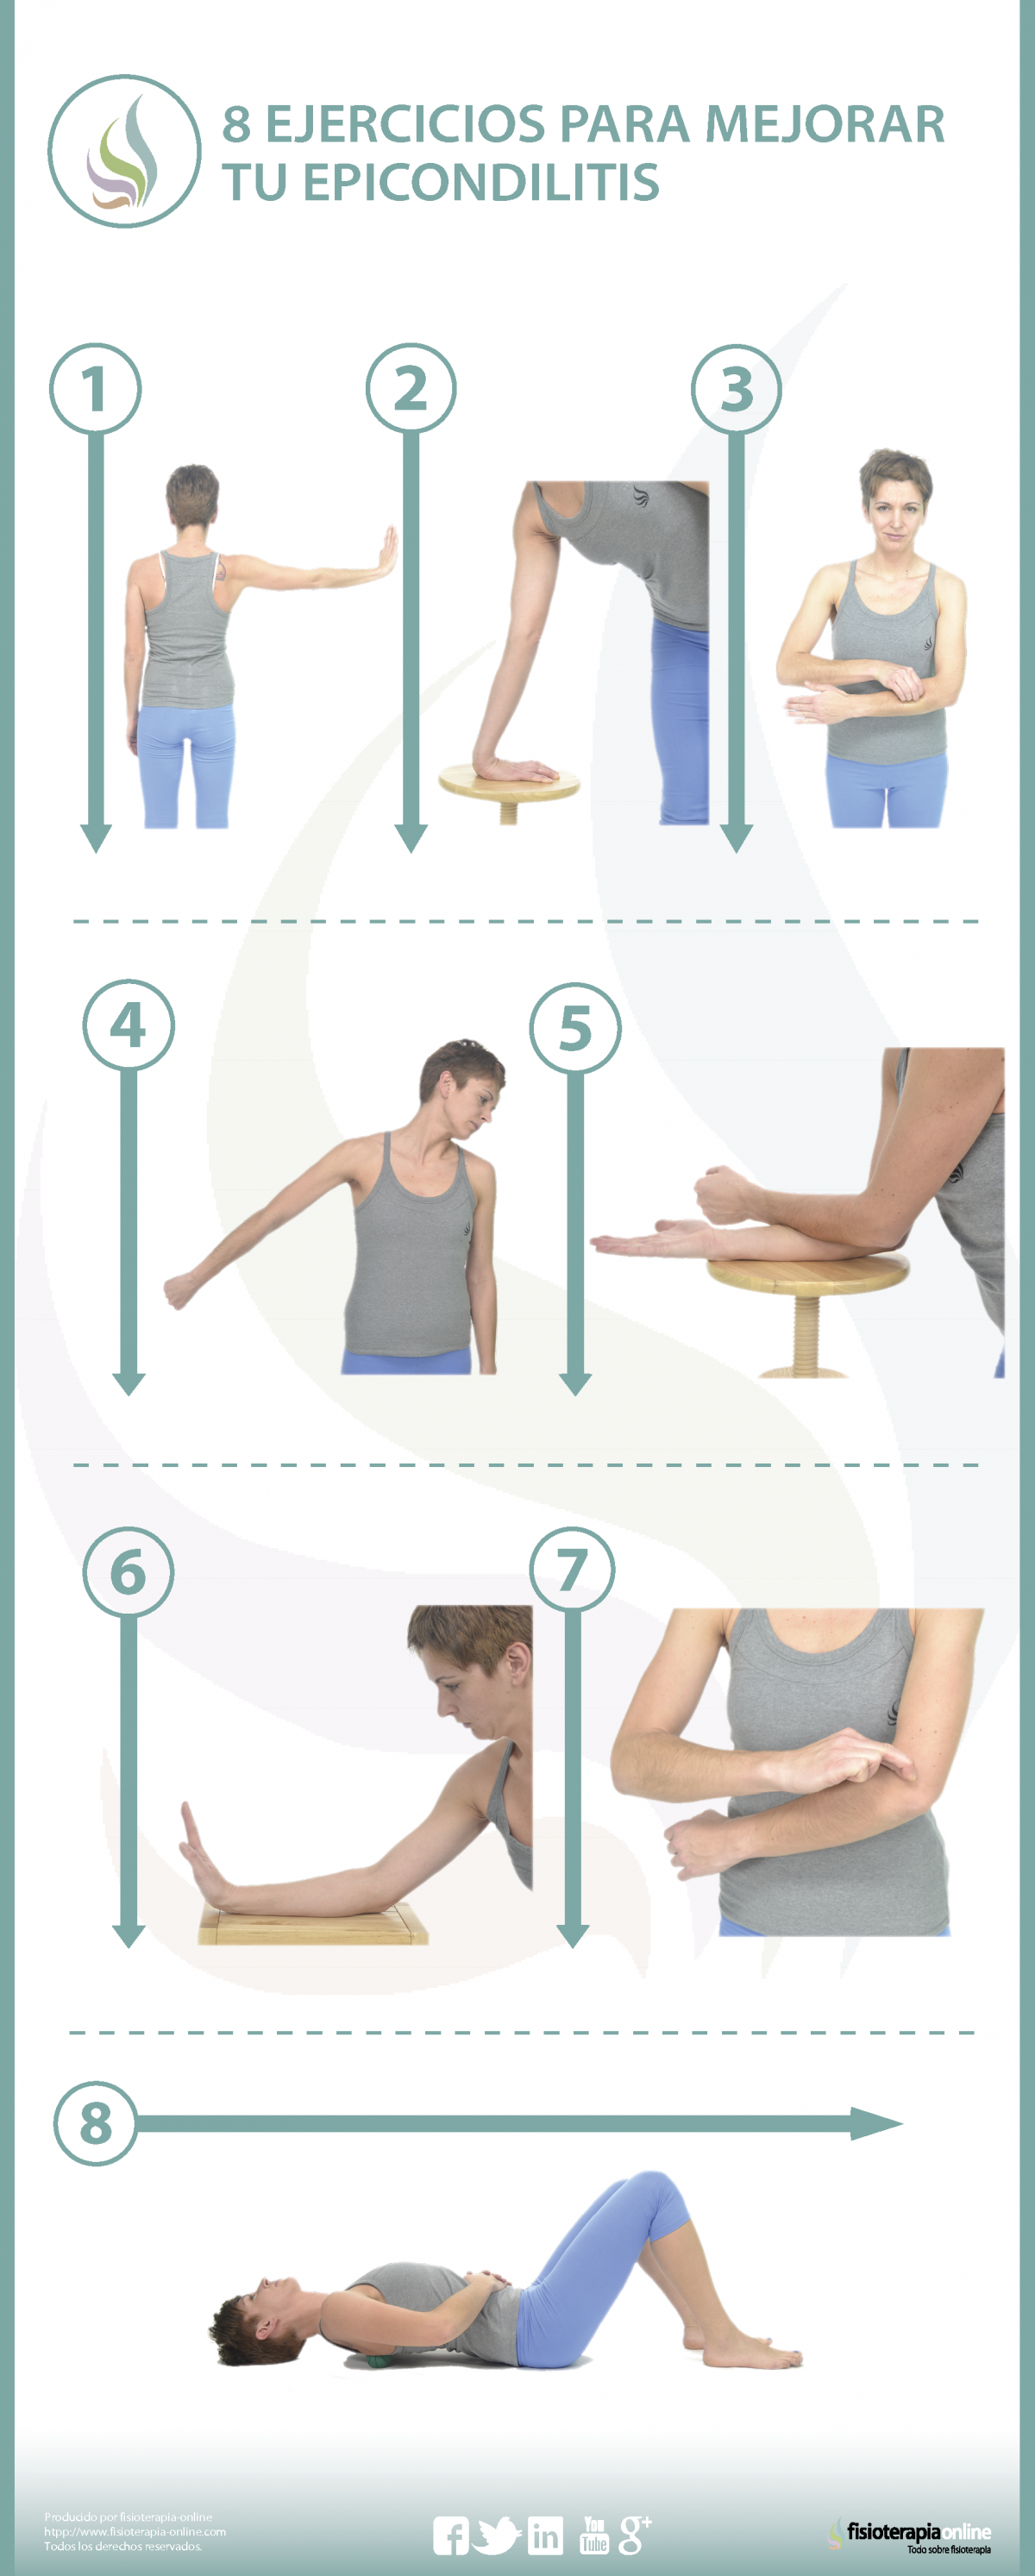 8 ejercicios, estiramientos y automasajes para la epicondilitis